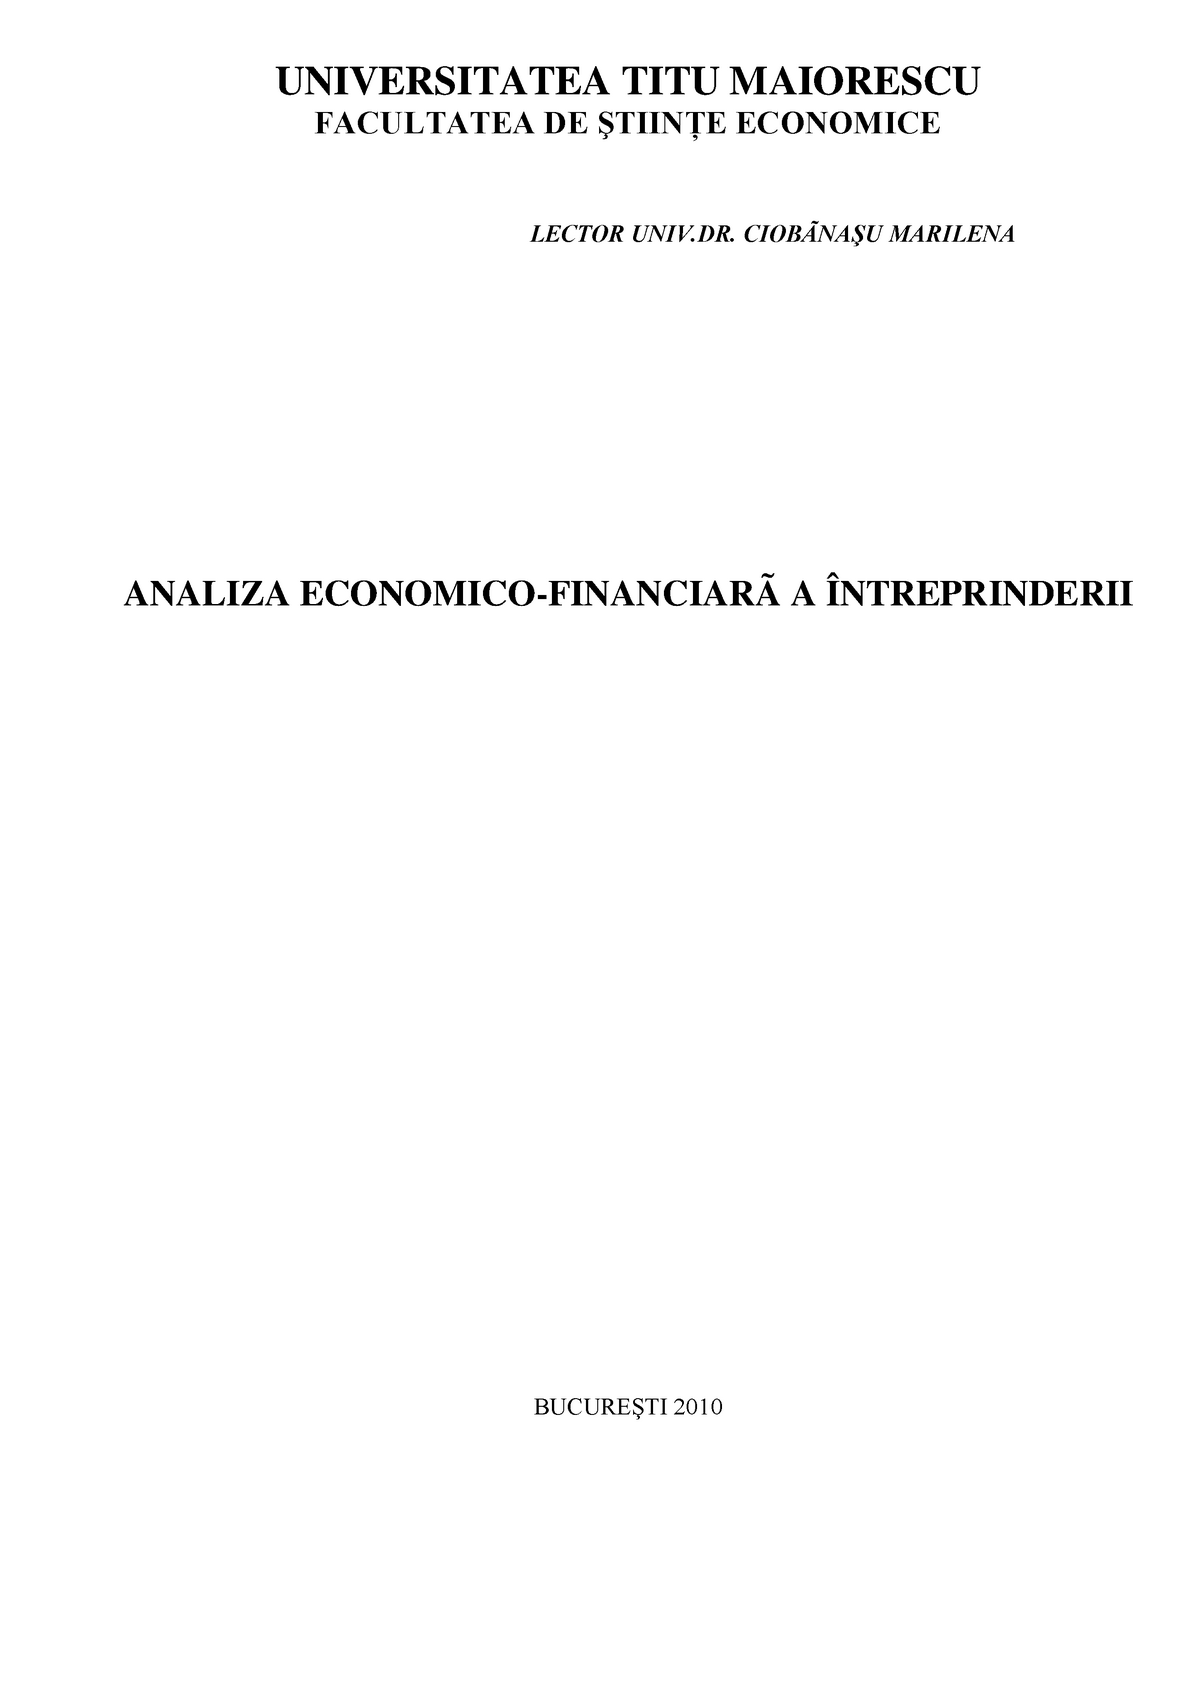 January head teacher Impossible Manual - Analiza Economico Financiara - UNIVERSITATEA TITU MAIORESCU  FACULTATEA DE ŞTIINŢE ECONOMICE - StuDocu